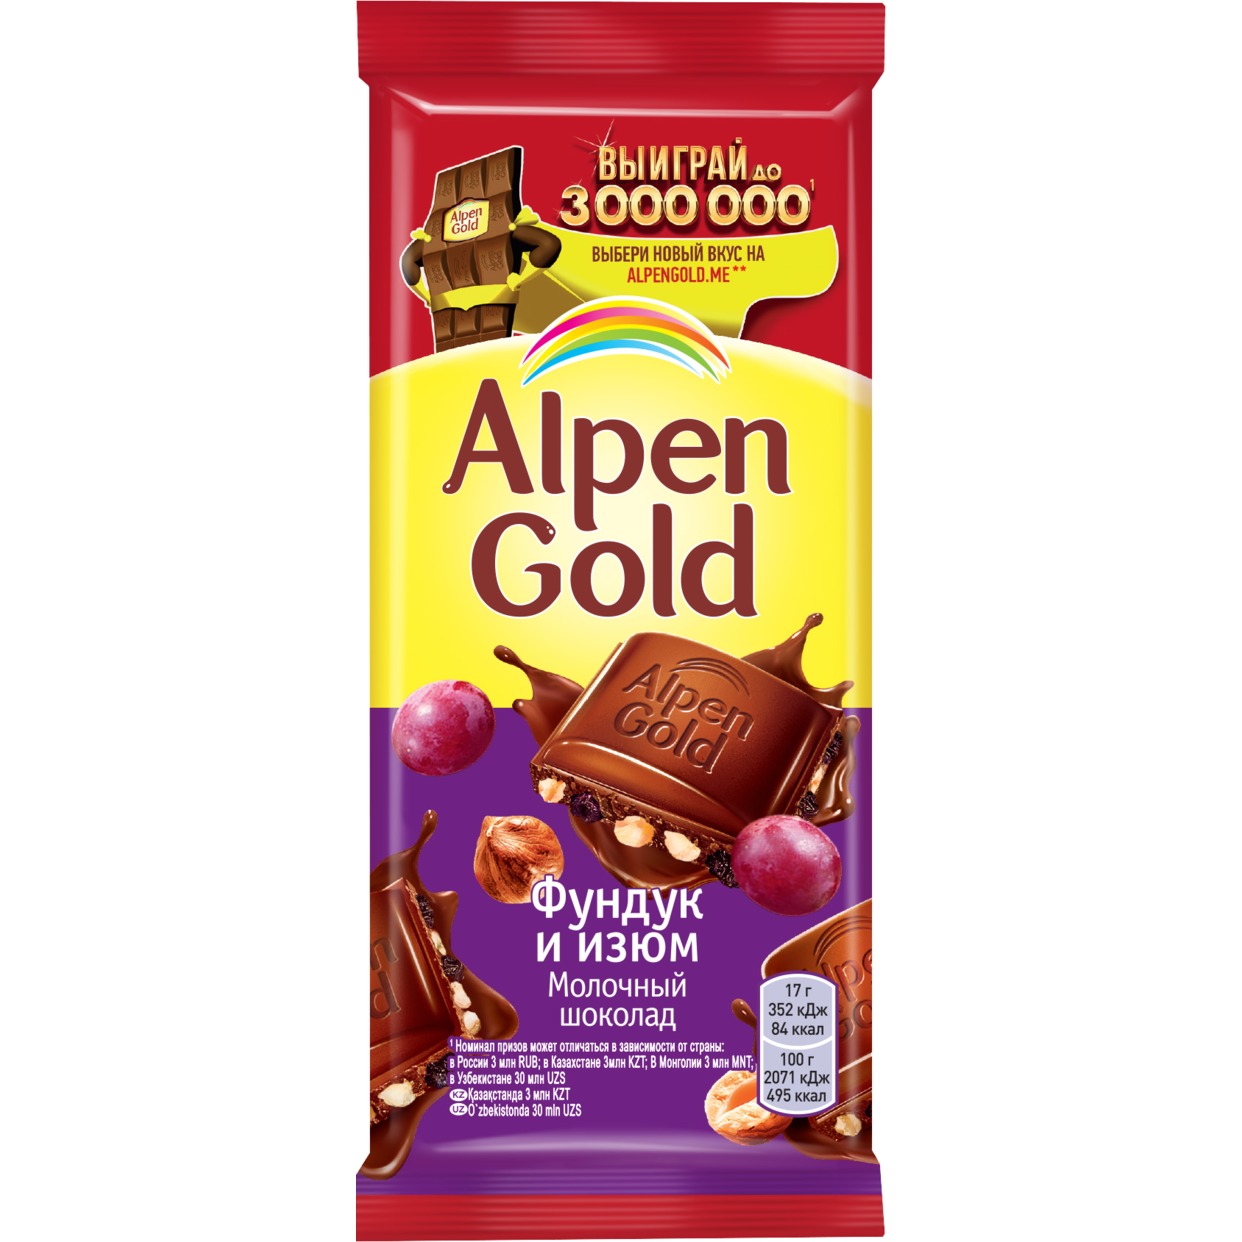 Шоколад молочный Alpen Gold Альпен Гольд с фундуком и изюмом, 85г по акции в Пятерочке